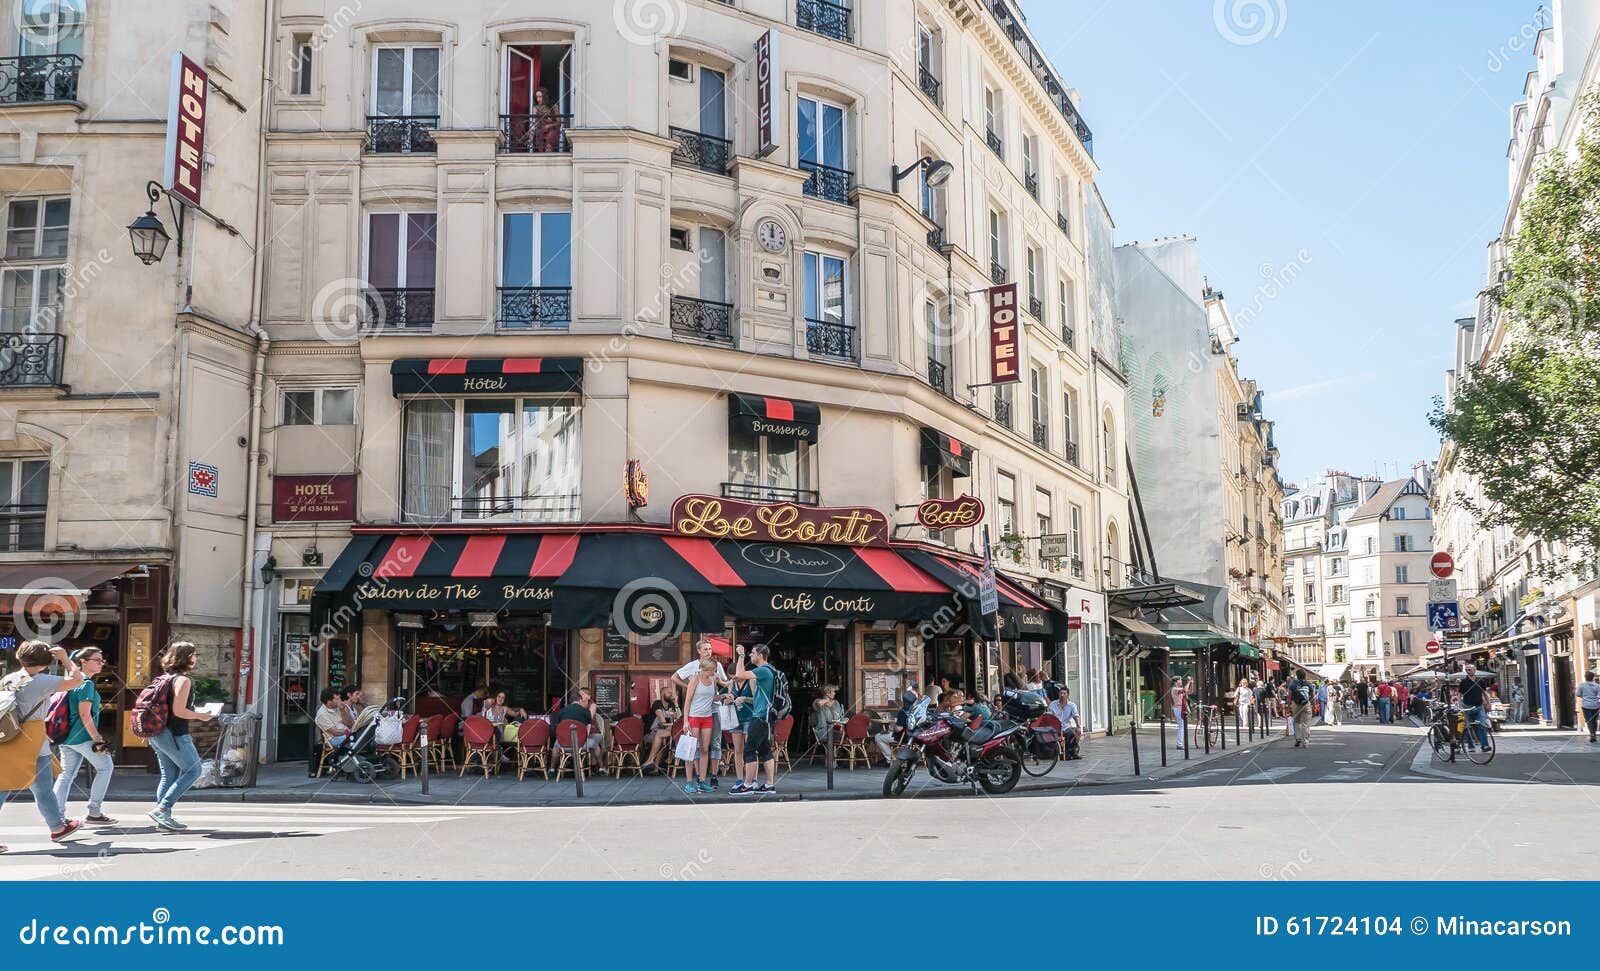 Paris Street Cafe Scene